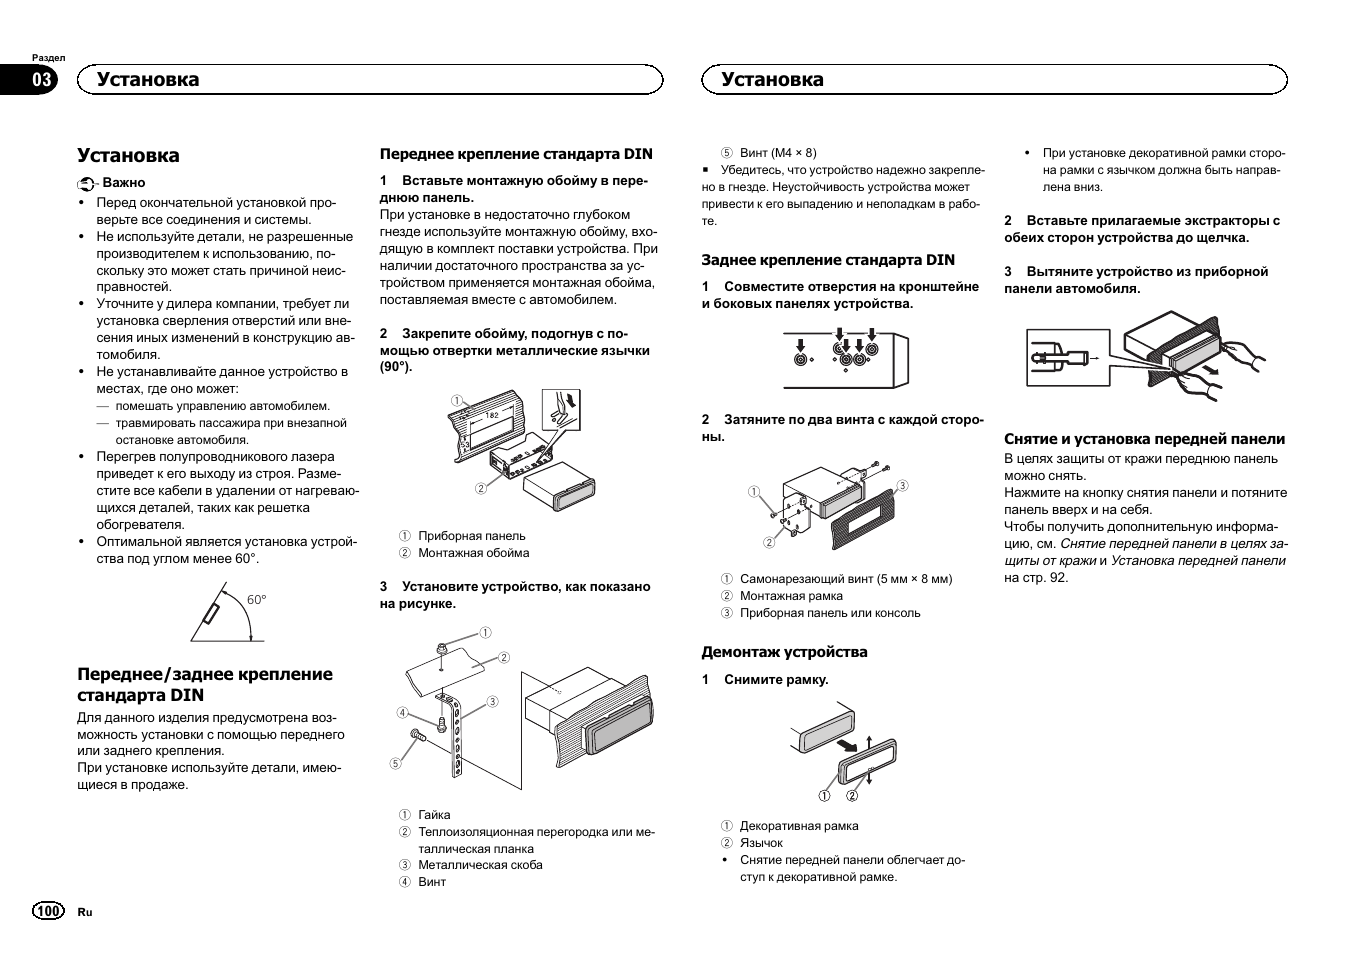 Установка | Pioneer DEH-1400UB User Manual | Page 100 / 108